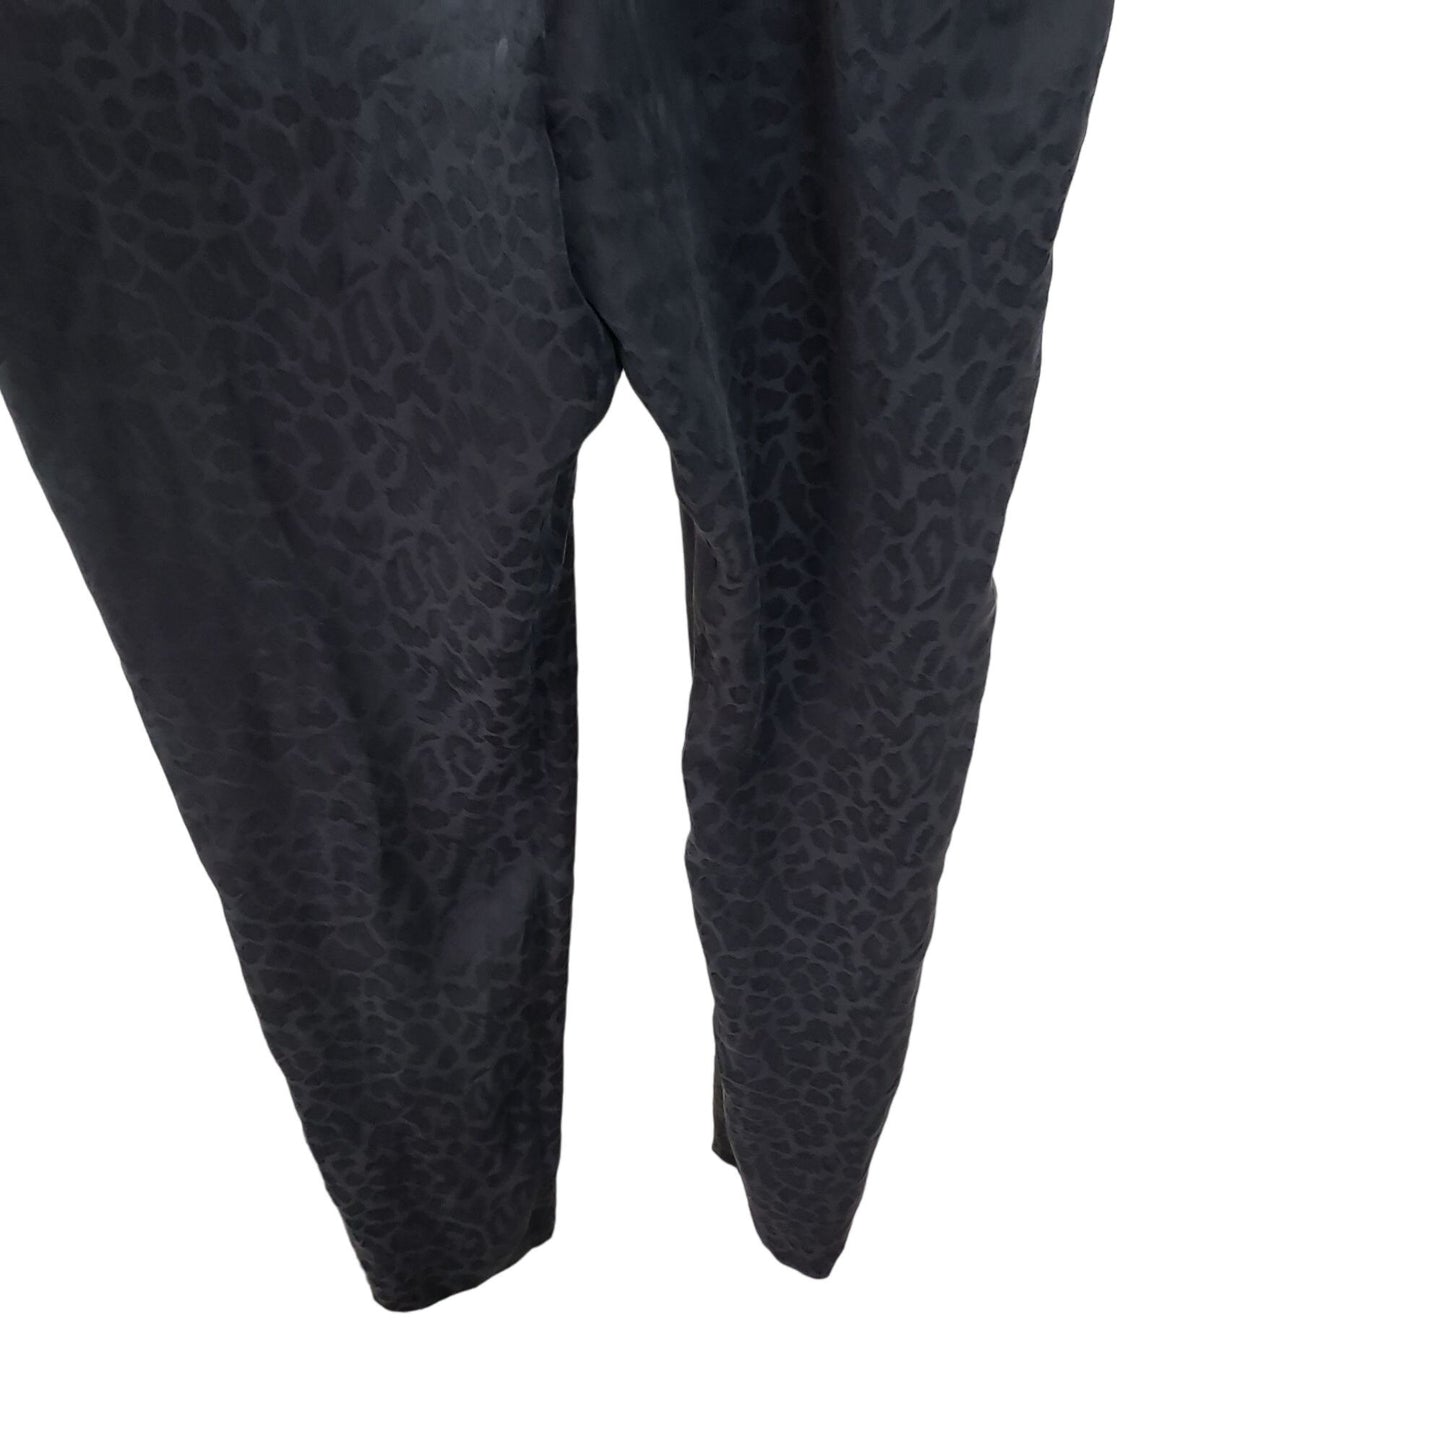 Rebecca Taylor 100% Silk Leopard Print Smocked Jumpsuit Size 2 *Missing Belt*